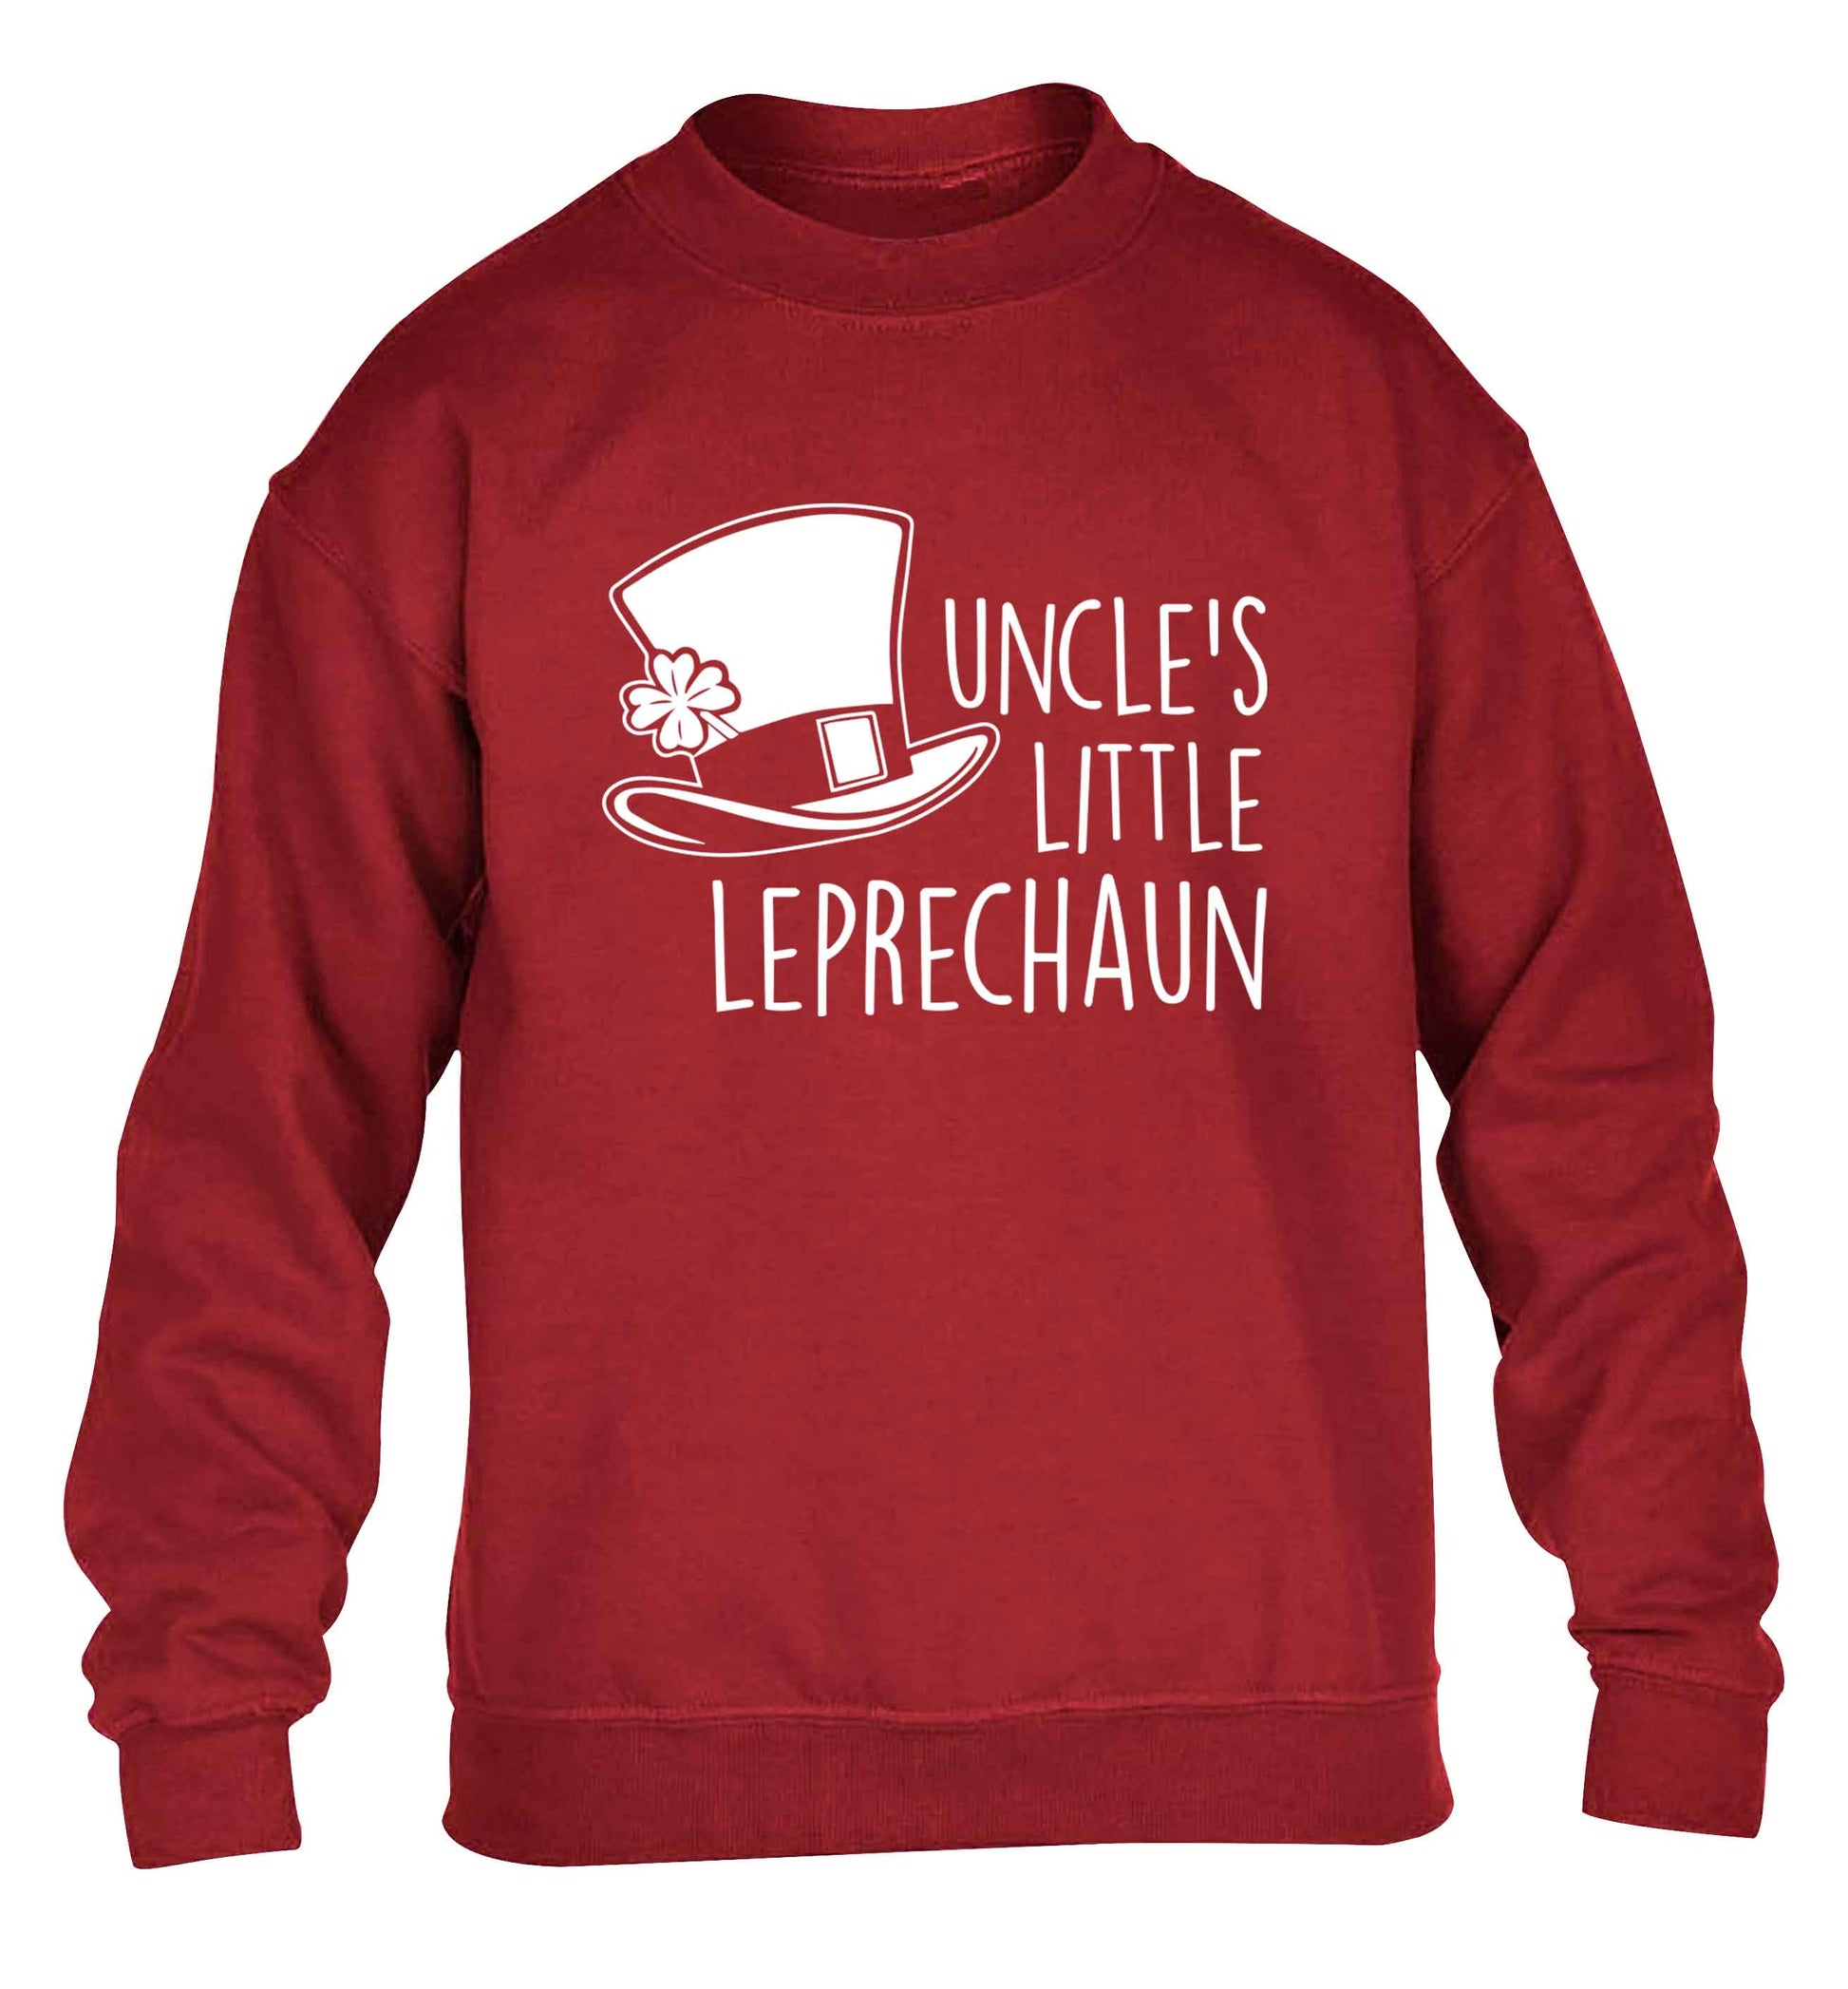 Uncles little leprechaun children's grey sweater 12-13 Years